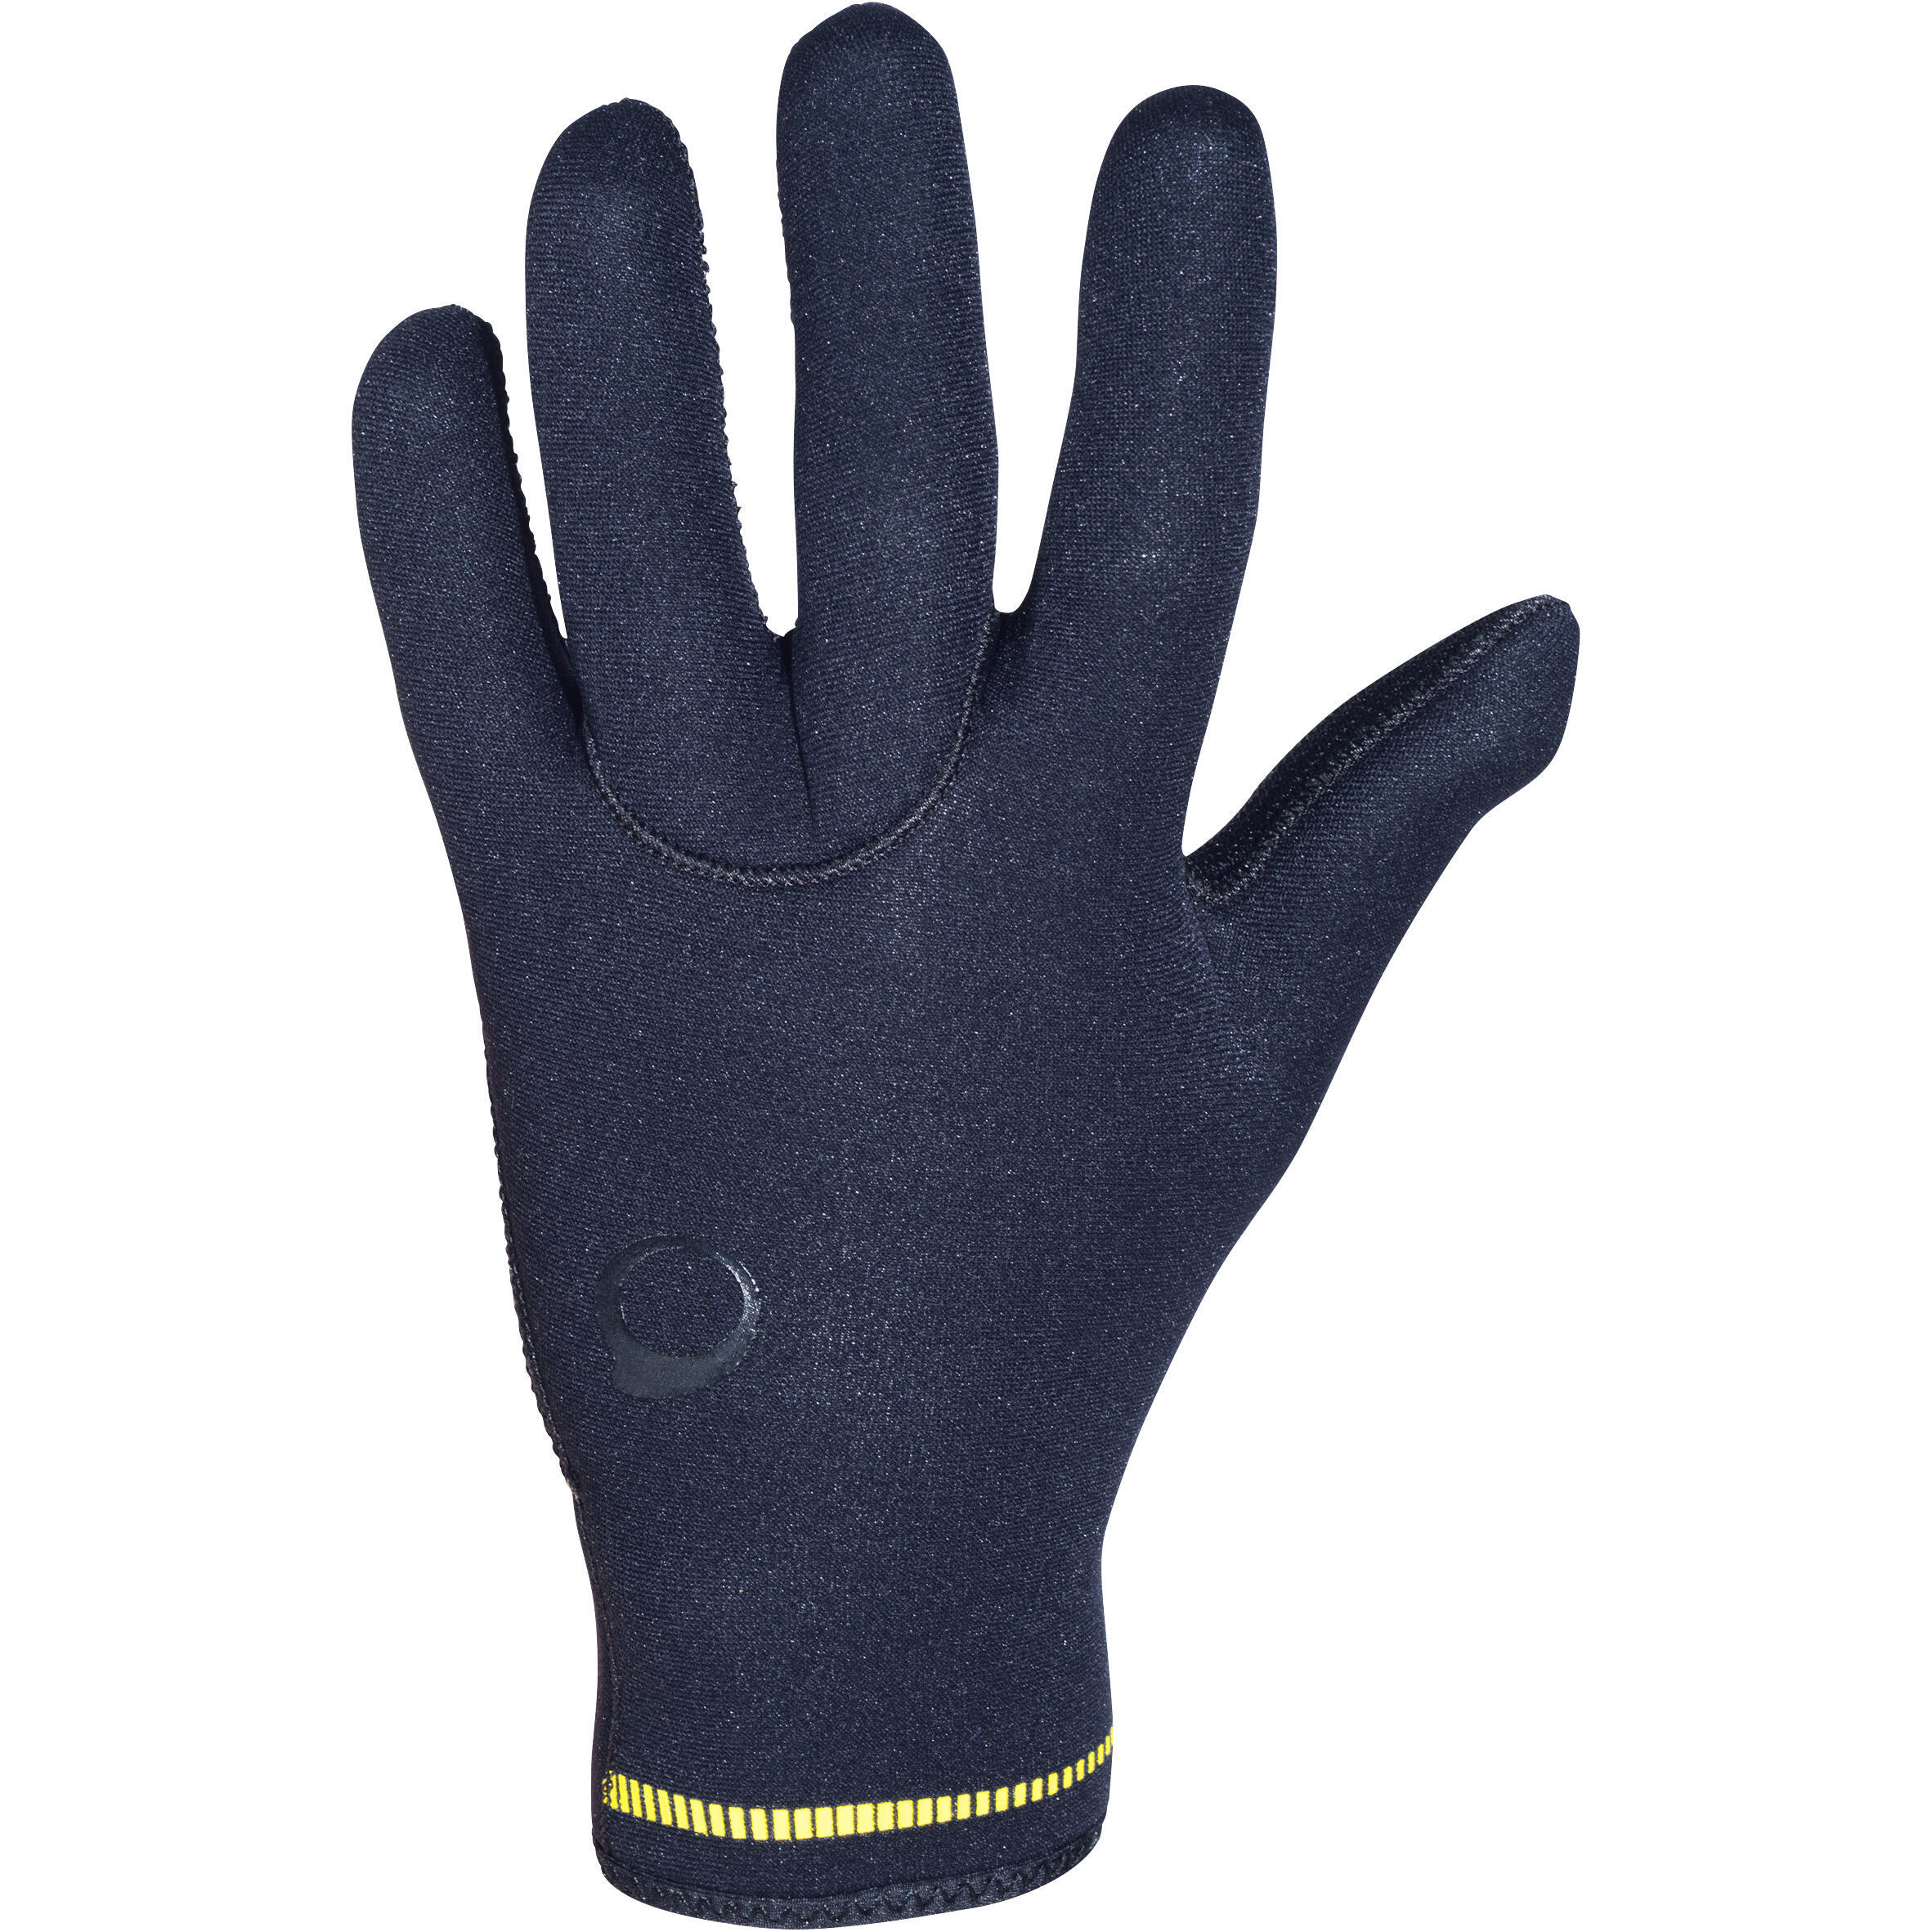 Неопреновые перчатки для дайвинга SCD 3 мм черные SUBEA, черный перчатки для дайвинга 3 мм неопреновые нескользящие перчатки для дайвинга теплые перчатки для плавания перчатки для подводной охоты серф